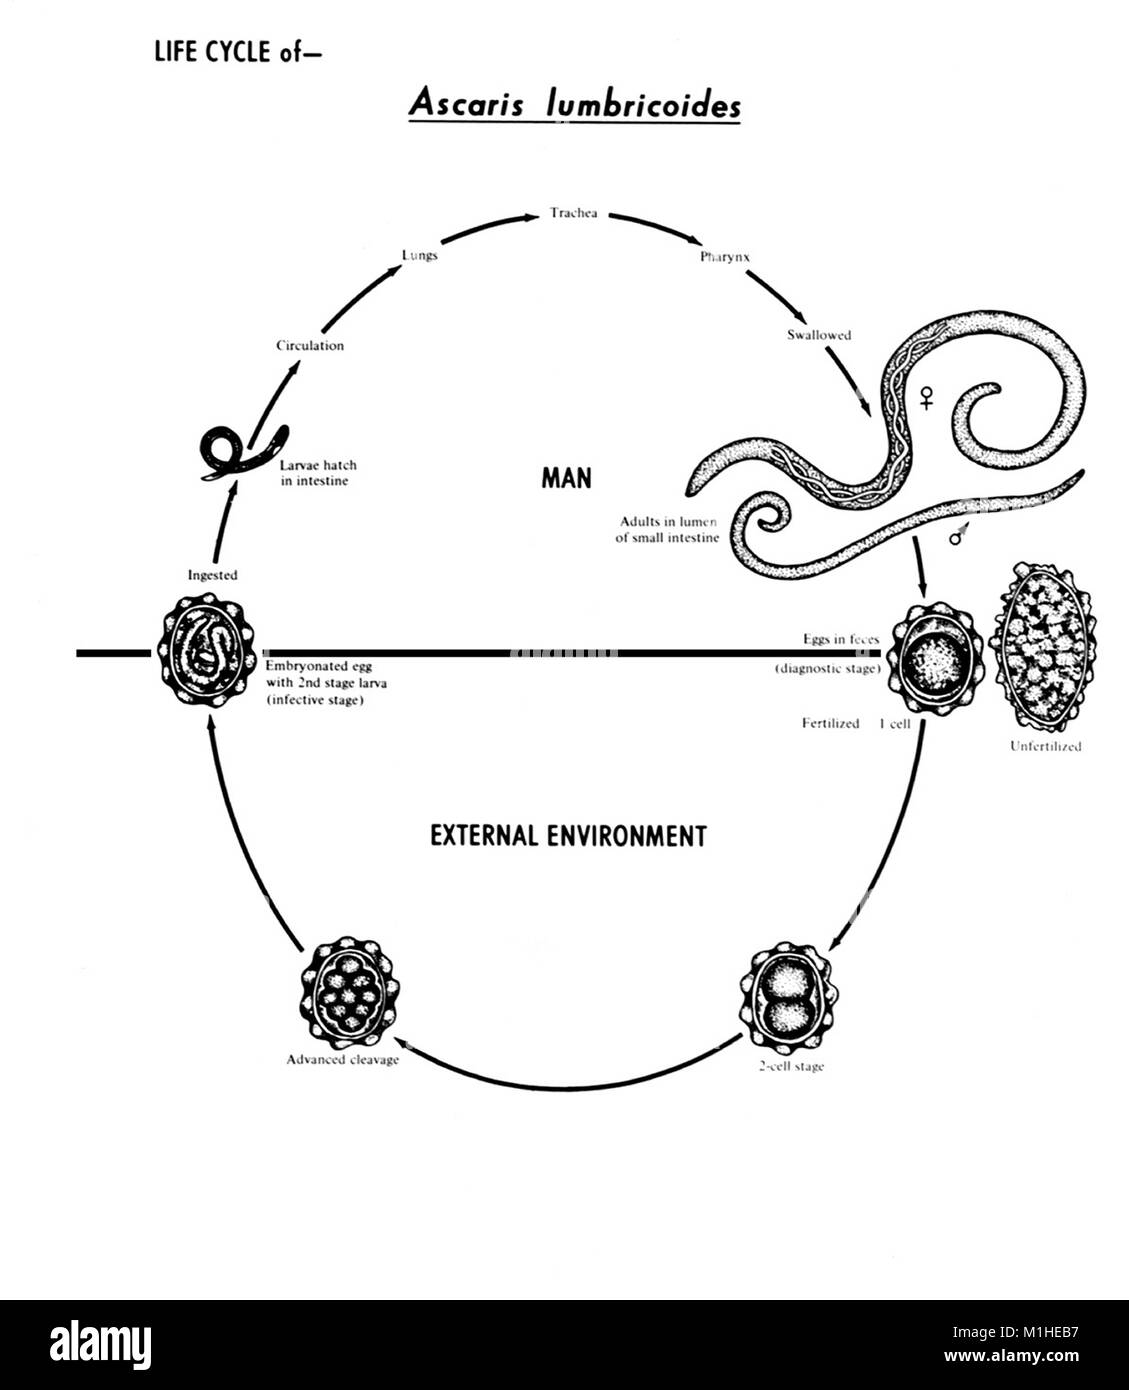 Жизненный цикл аскариды схема. Жизненный цикл Ascaris lumbricoides схема. Жизненный цикл аскариды человеческой схема. Схема жизненного цикла аскариды (Ascaris lumbricoides). Цикл развития аскариды человеческой.